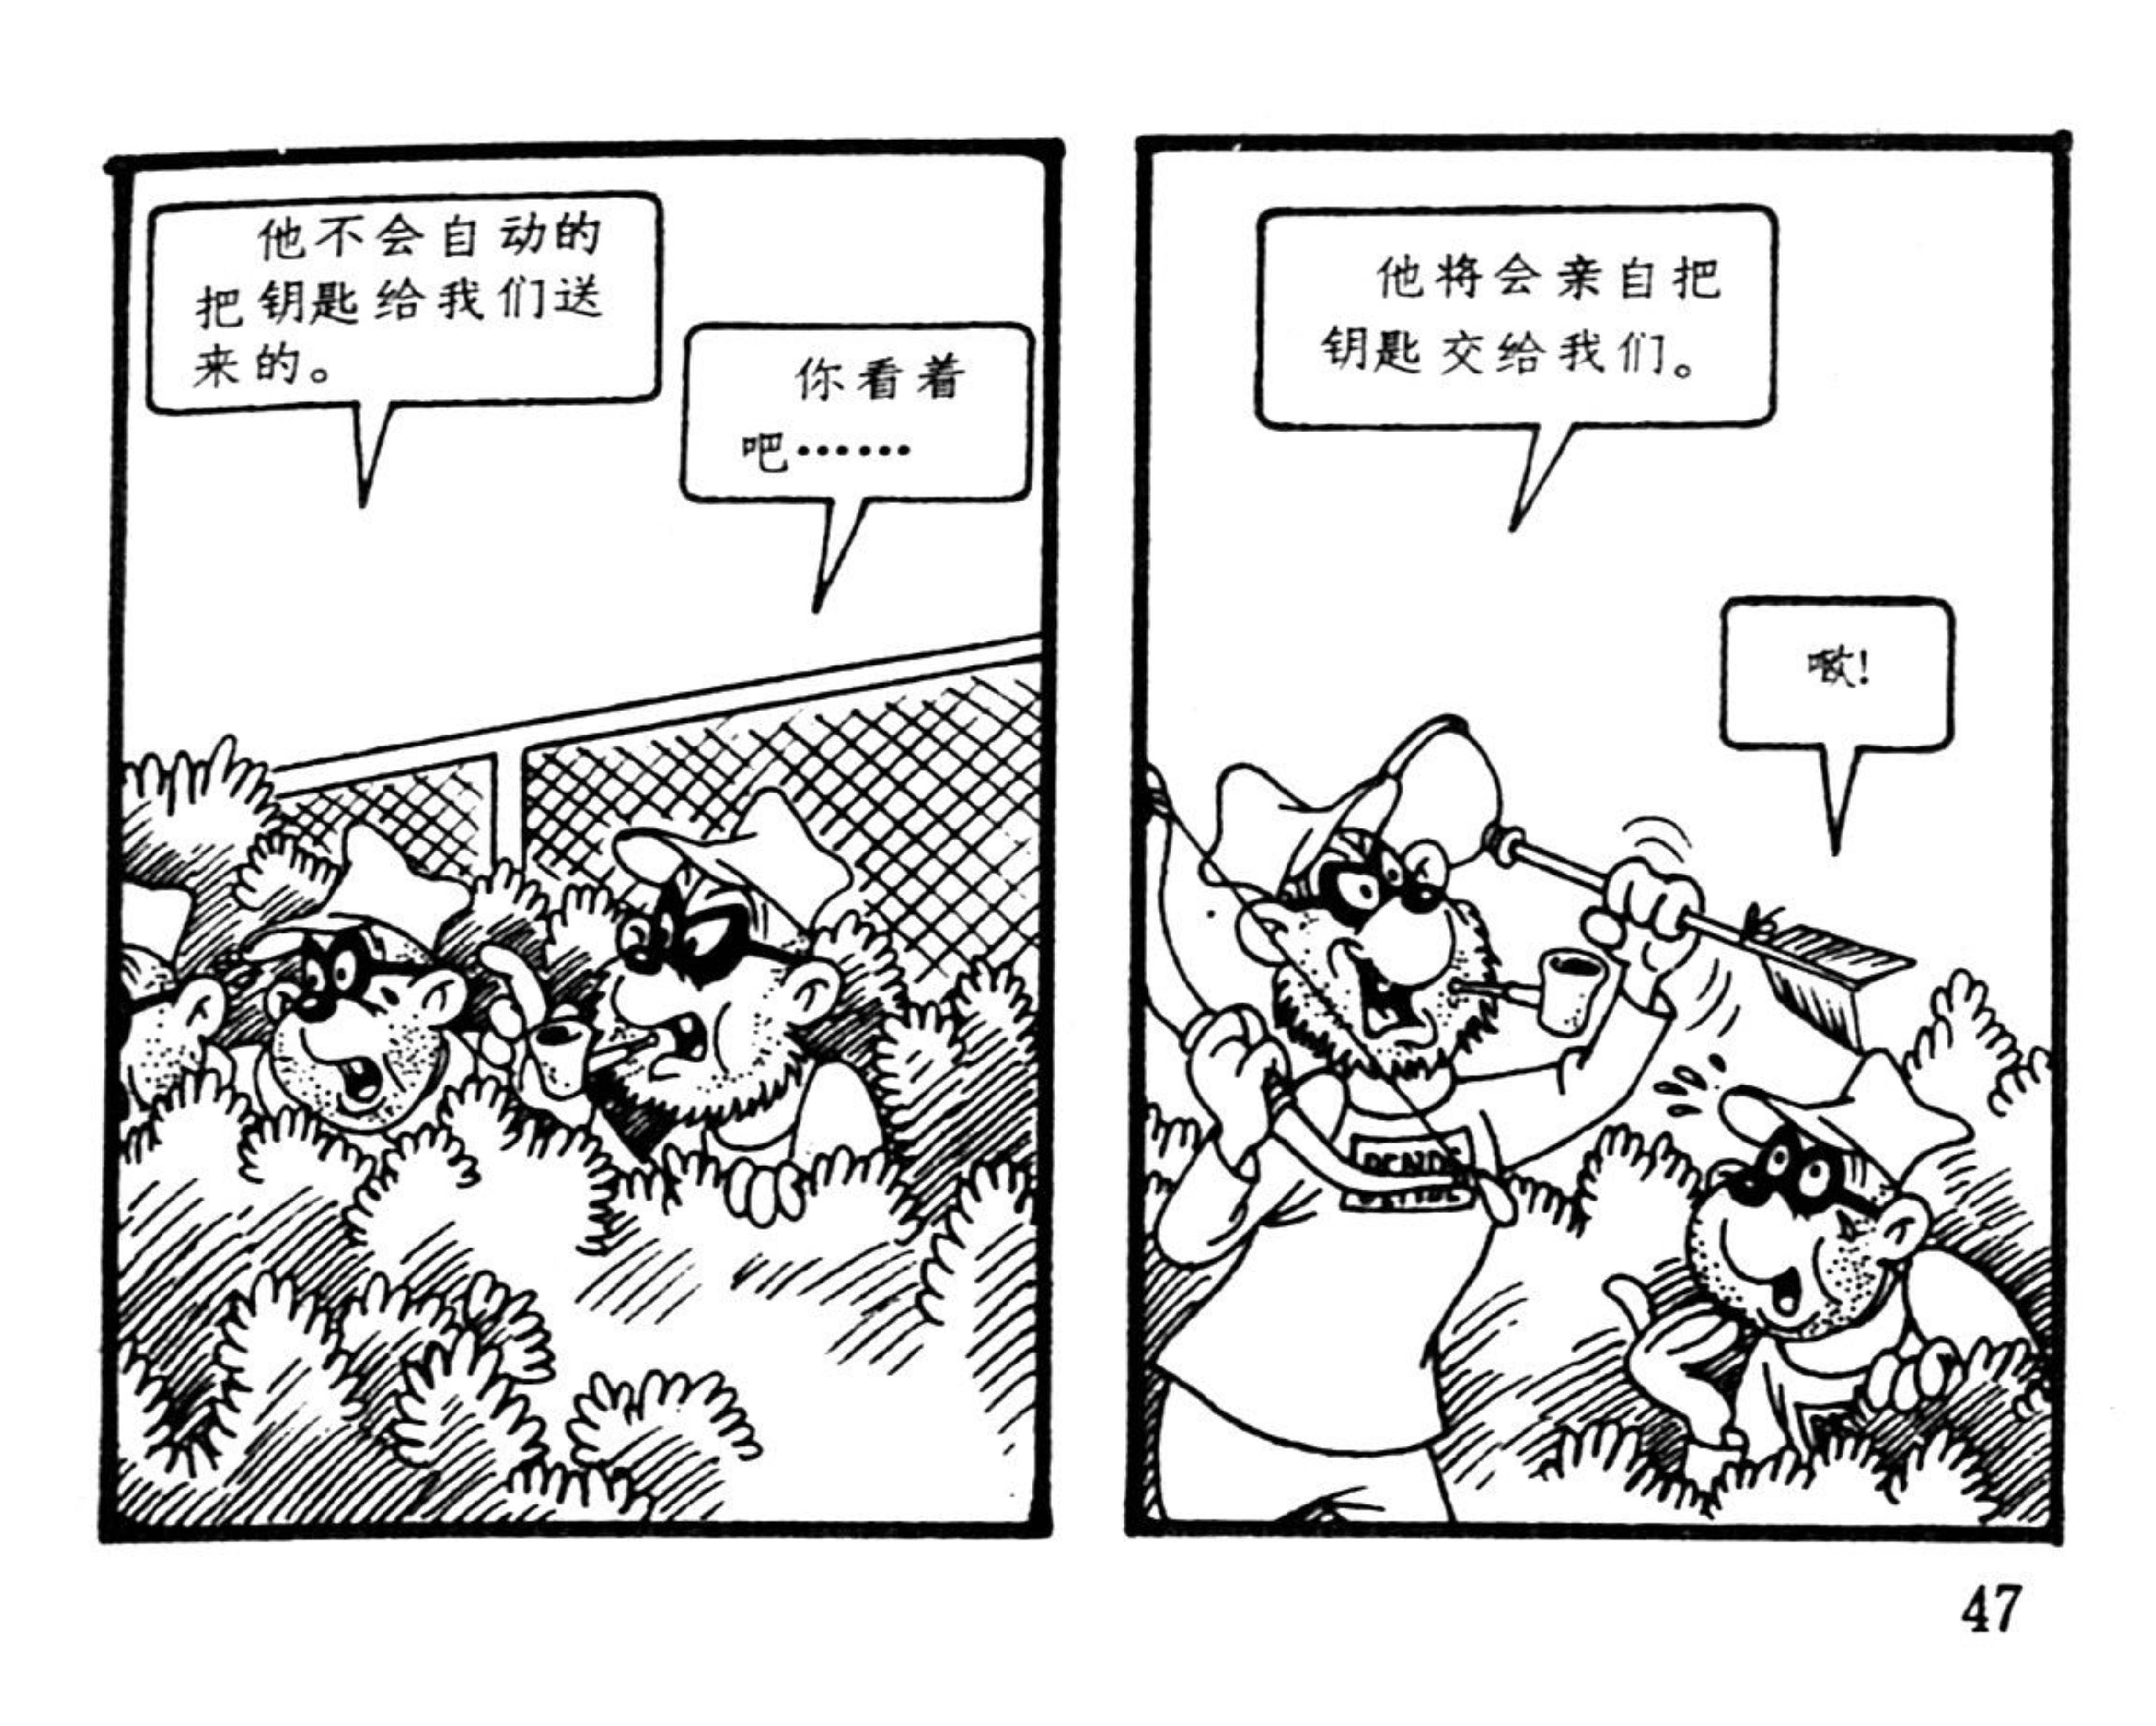 中国文联出版的《米老鼠画刊》连环画，共70册